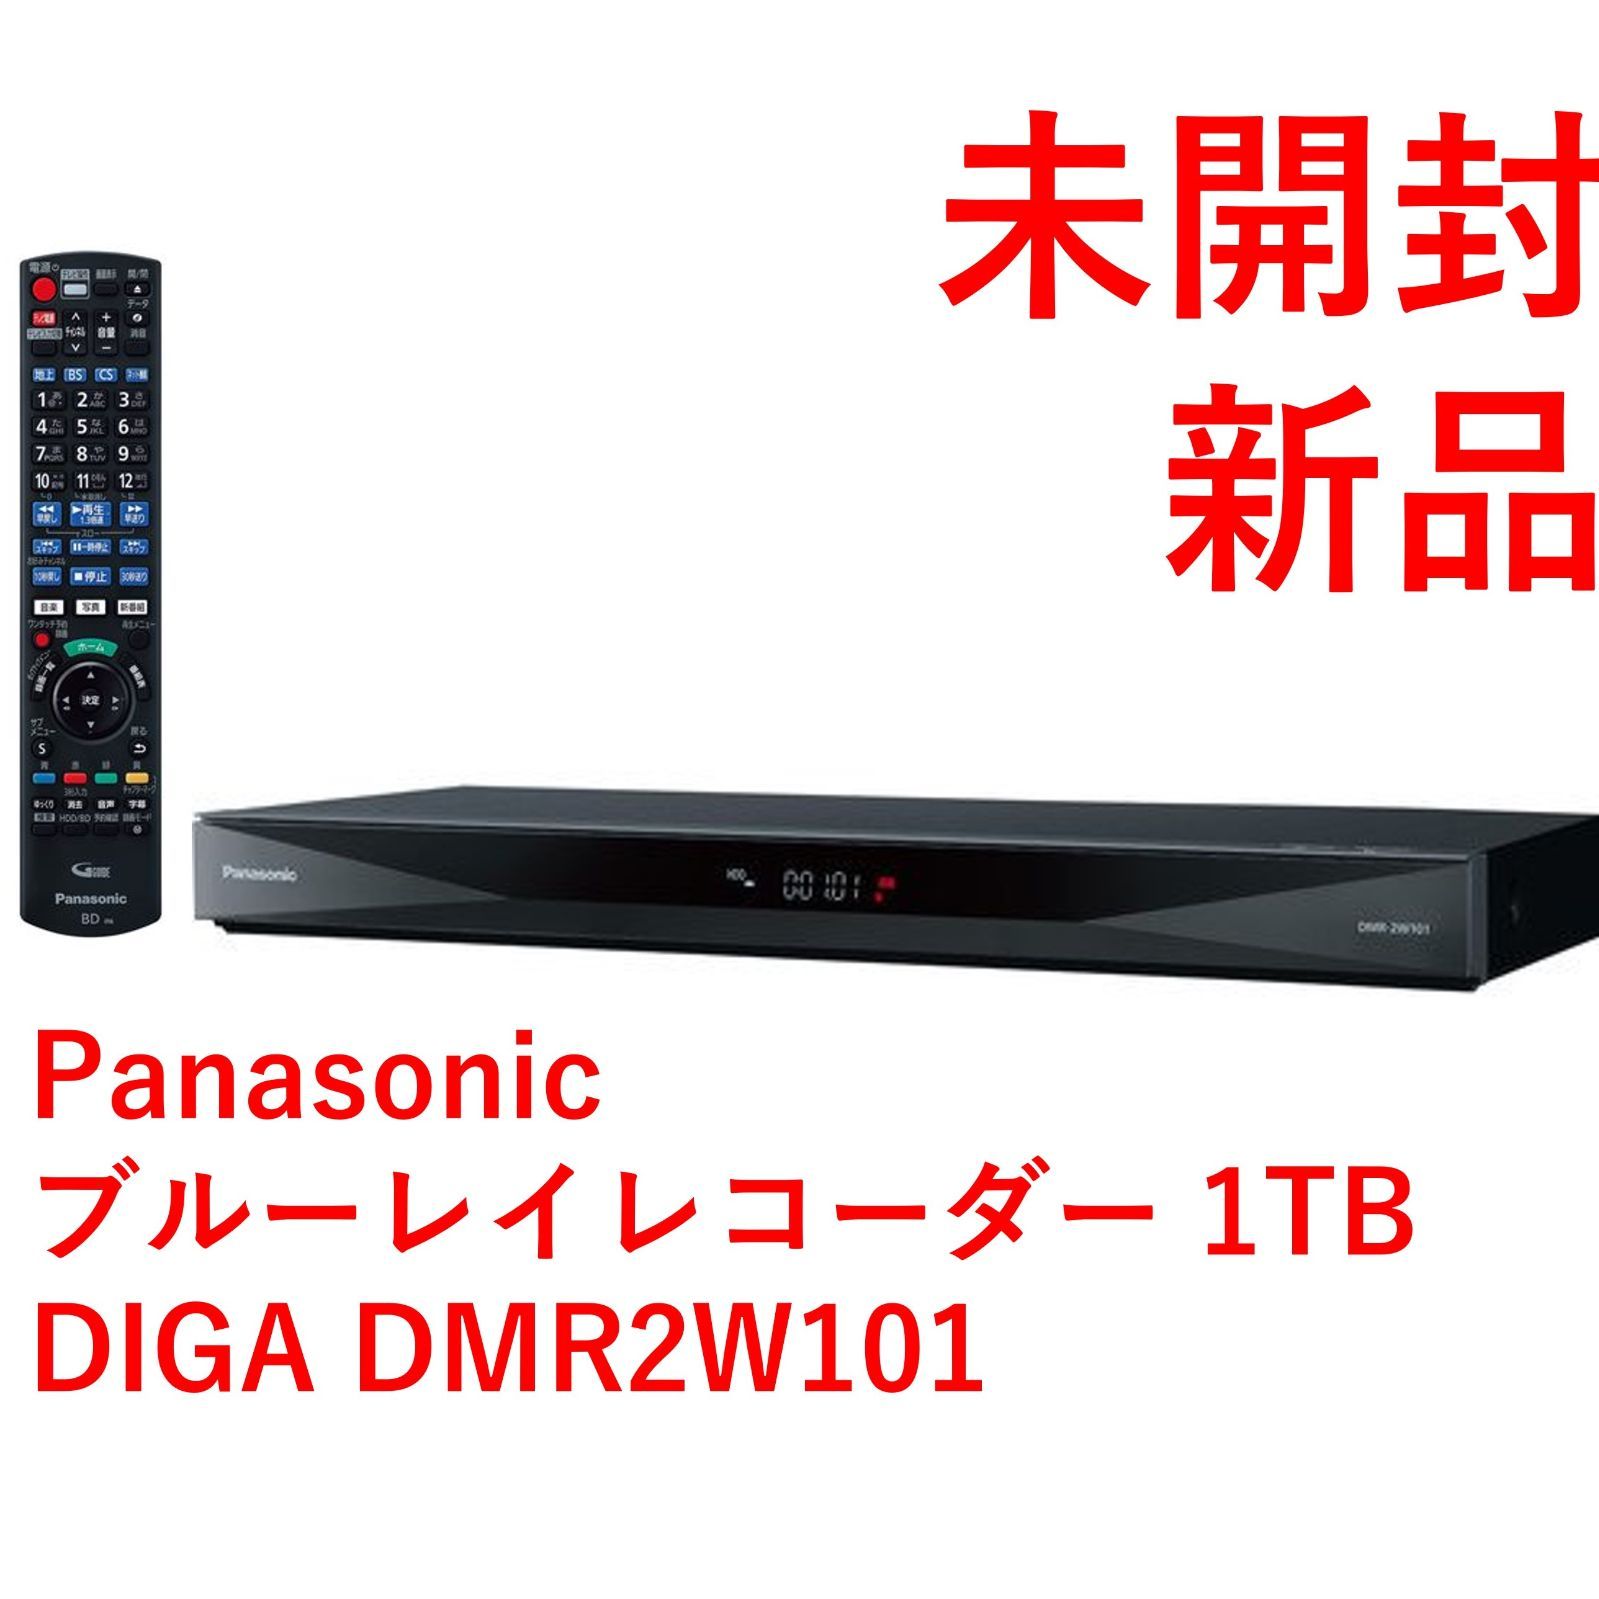 新品未開封】Panasonic DIGA(ディーガ) DMR-2W201 - ブルーレイレコーダー